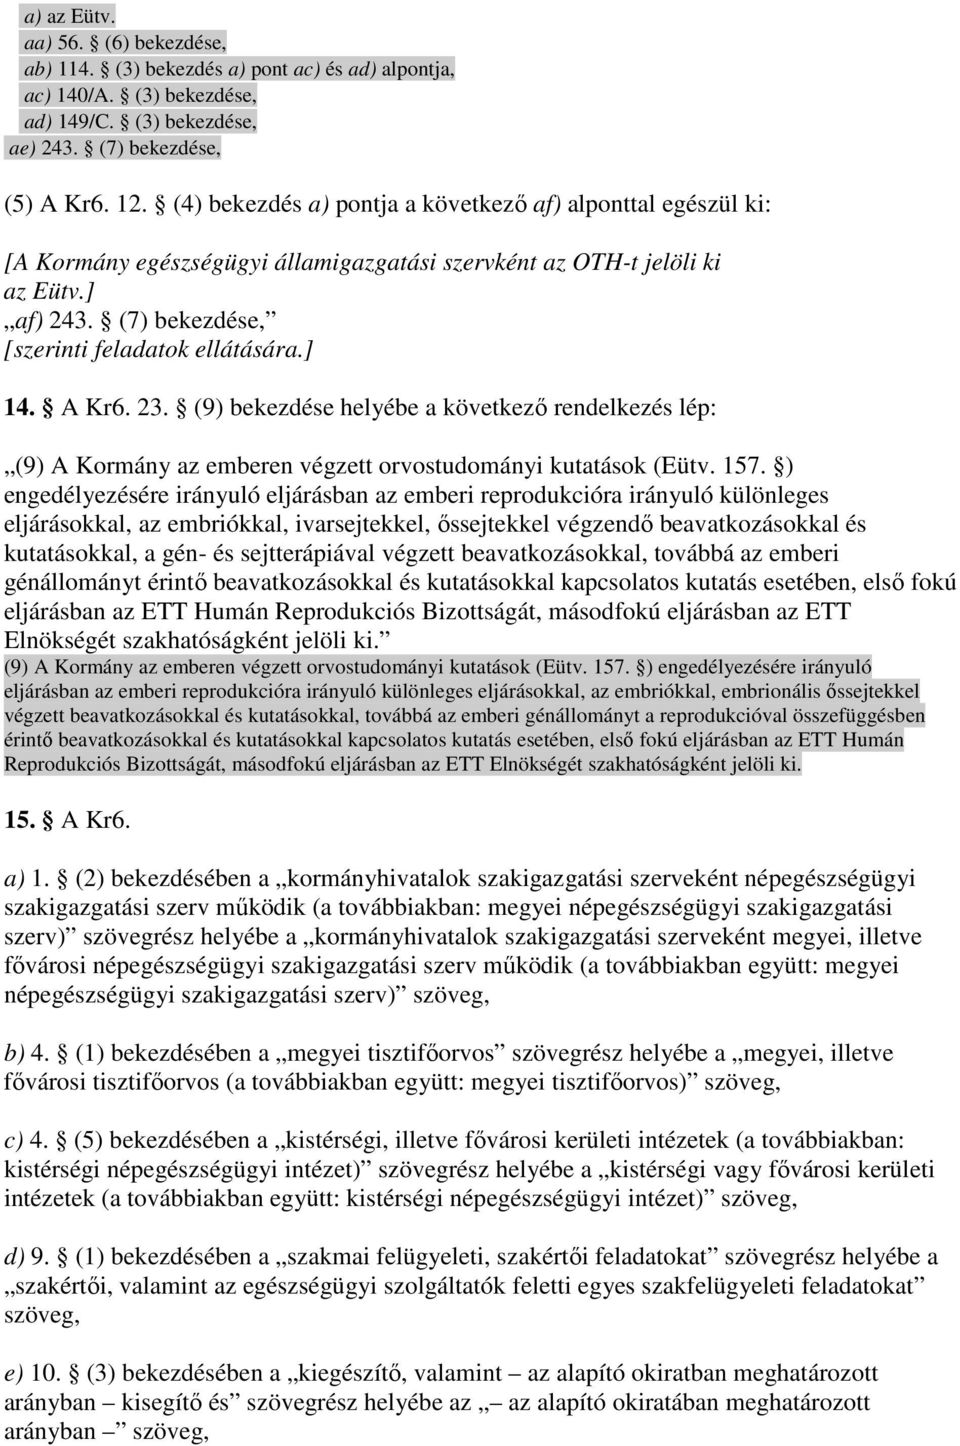 A Kr6. 23. (9) bekezdése helyébe a következı rendelkezés lép: (9) A Kormány az emberen végzett orvostudományi kutatások (Eütv. 157.